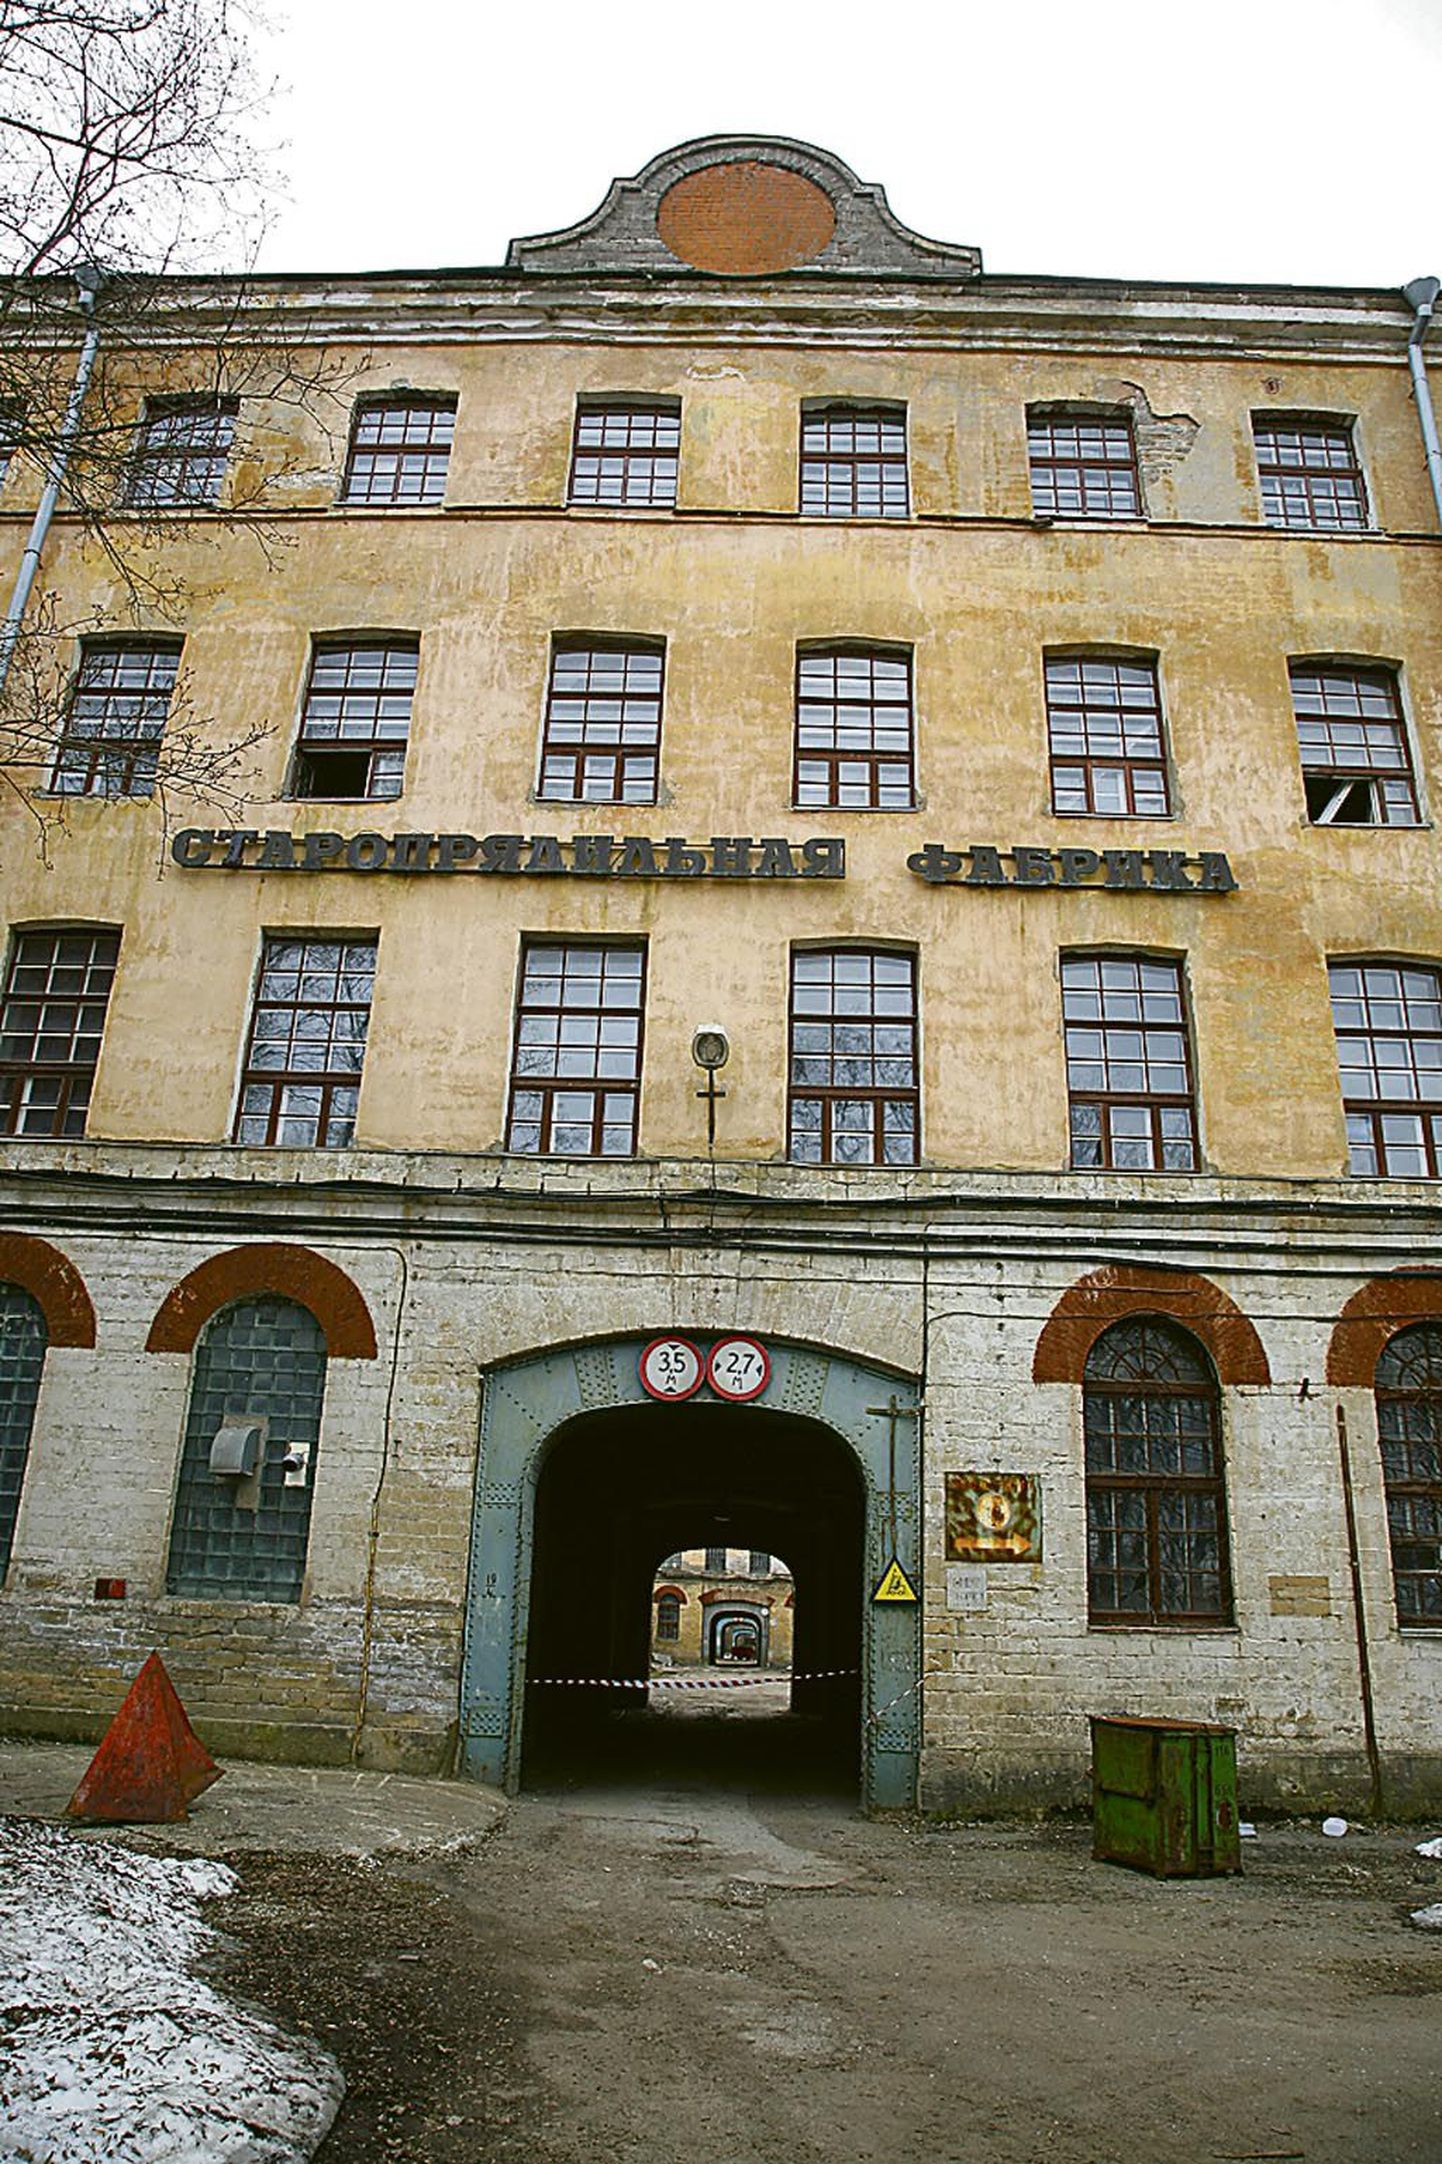 Kreenholmi tekstiilitööstuse tühjades hoonetes on aeg tarretunud nagu katastroofifilmis, pildil 30. aprillil 1857 nurgakivi saanud esimene tootmishoone, vana ketrusvabrik.